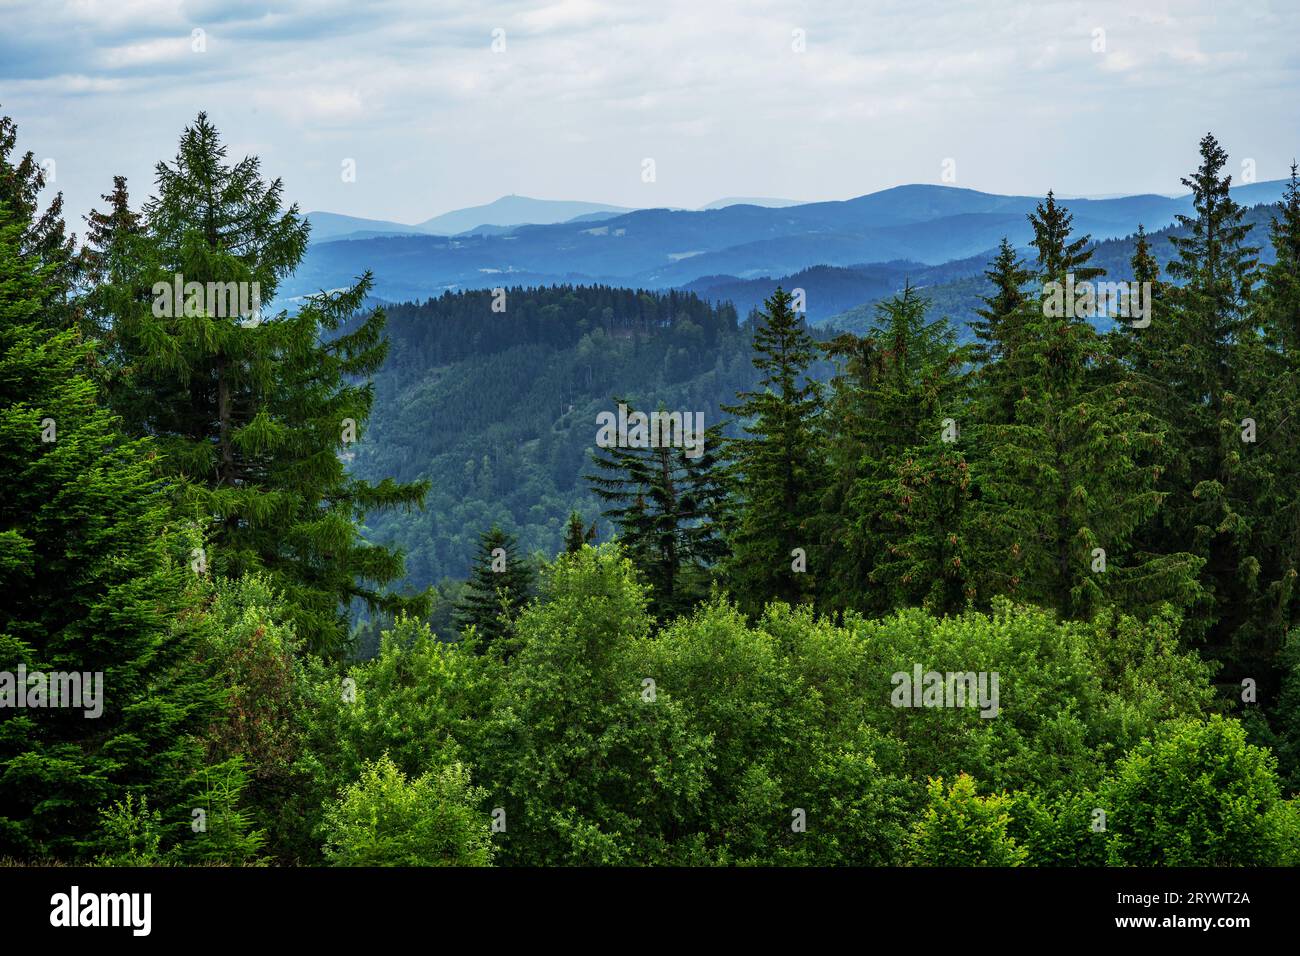 Forêt profonde, couronne d'arbres et montagne bleue à l'horizon, panorama de la montagne Javorniky de Kohutka, république tchèque. Banque D'Images